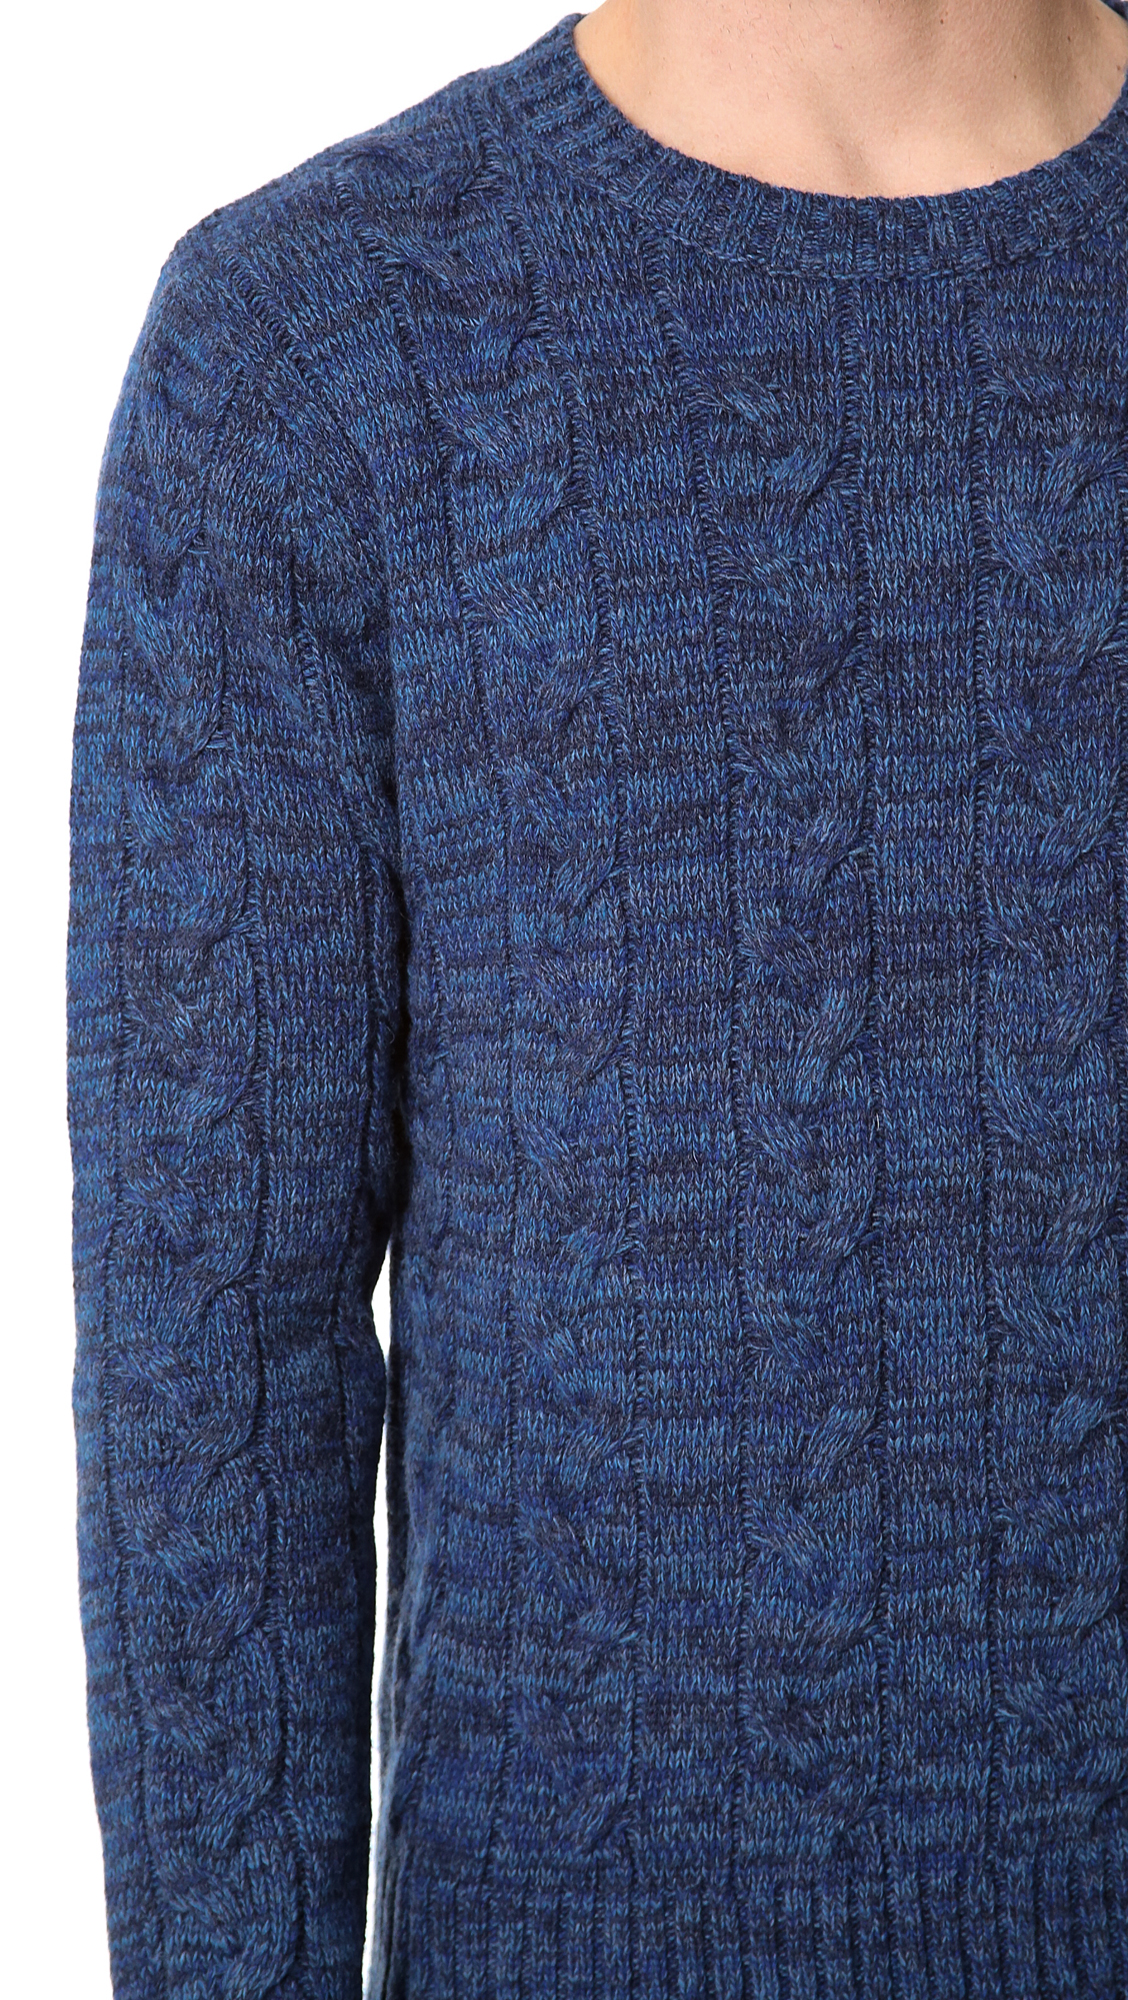 Lyst Gant Rugger Melange Cable Knit Sweater In Blue For Men